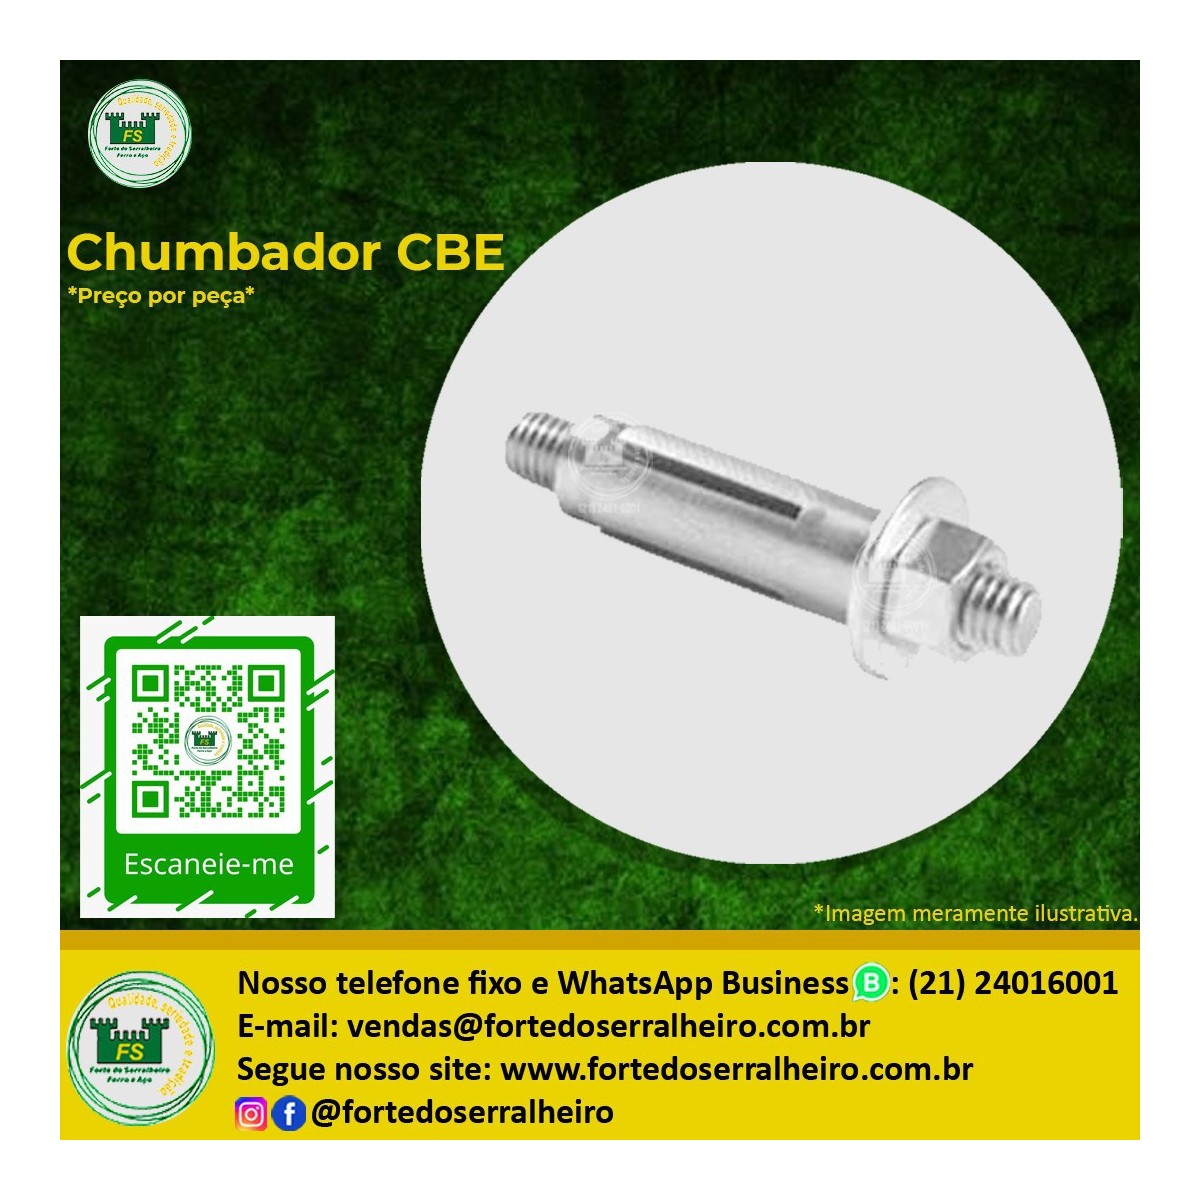 Chumbador CBE